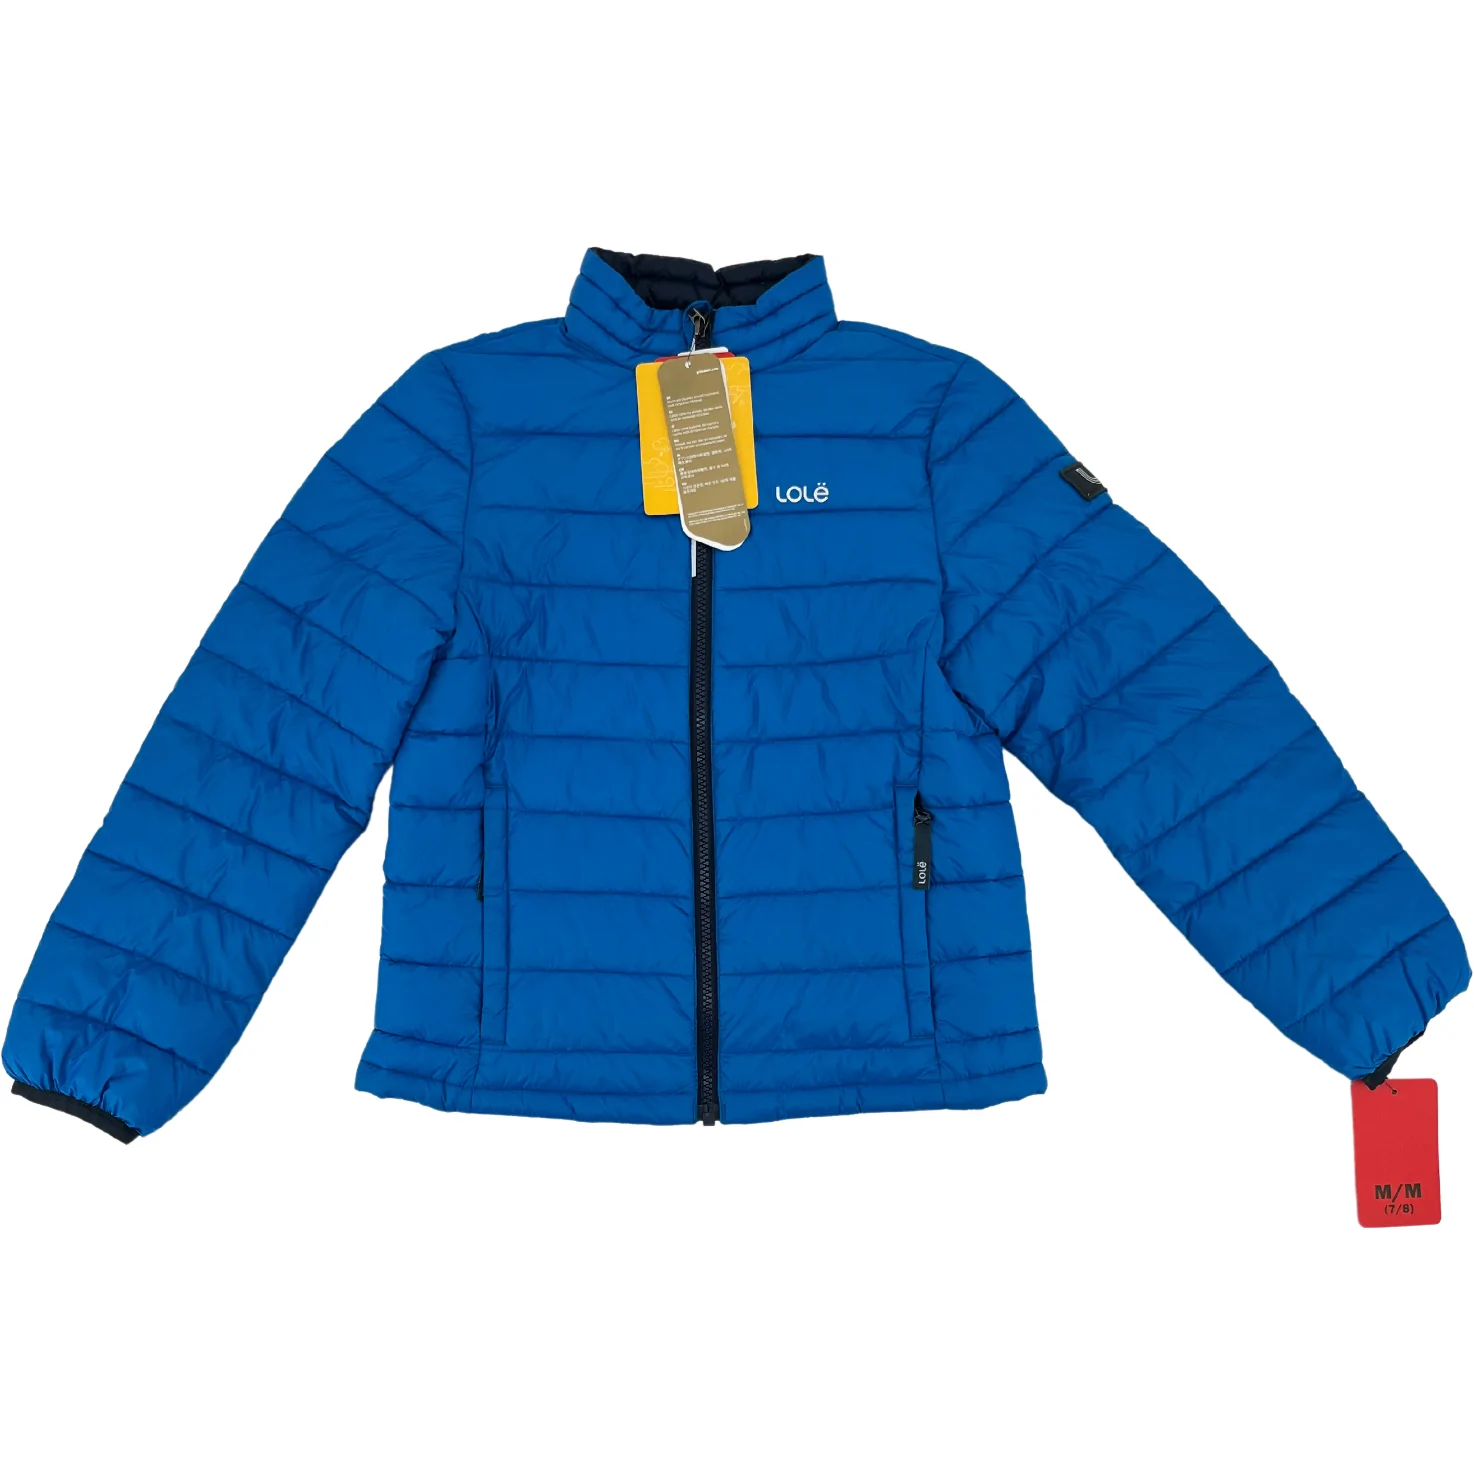 Lole Children's Coat / Children's Fall Coat / Puffer Coat / Blue / Size Medium